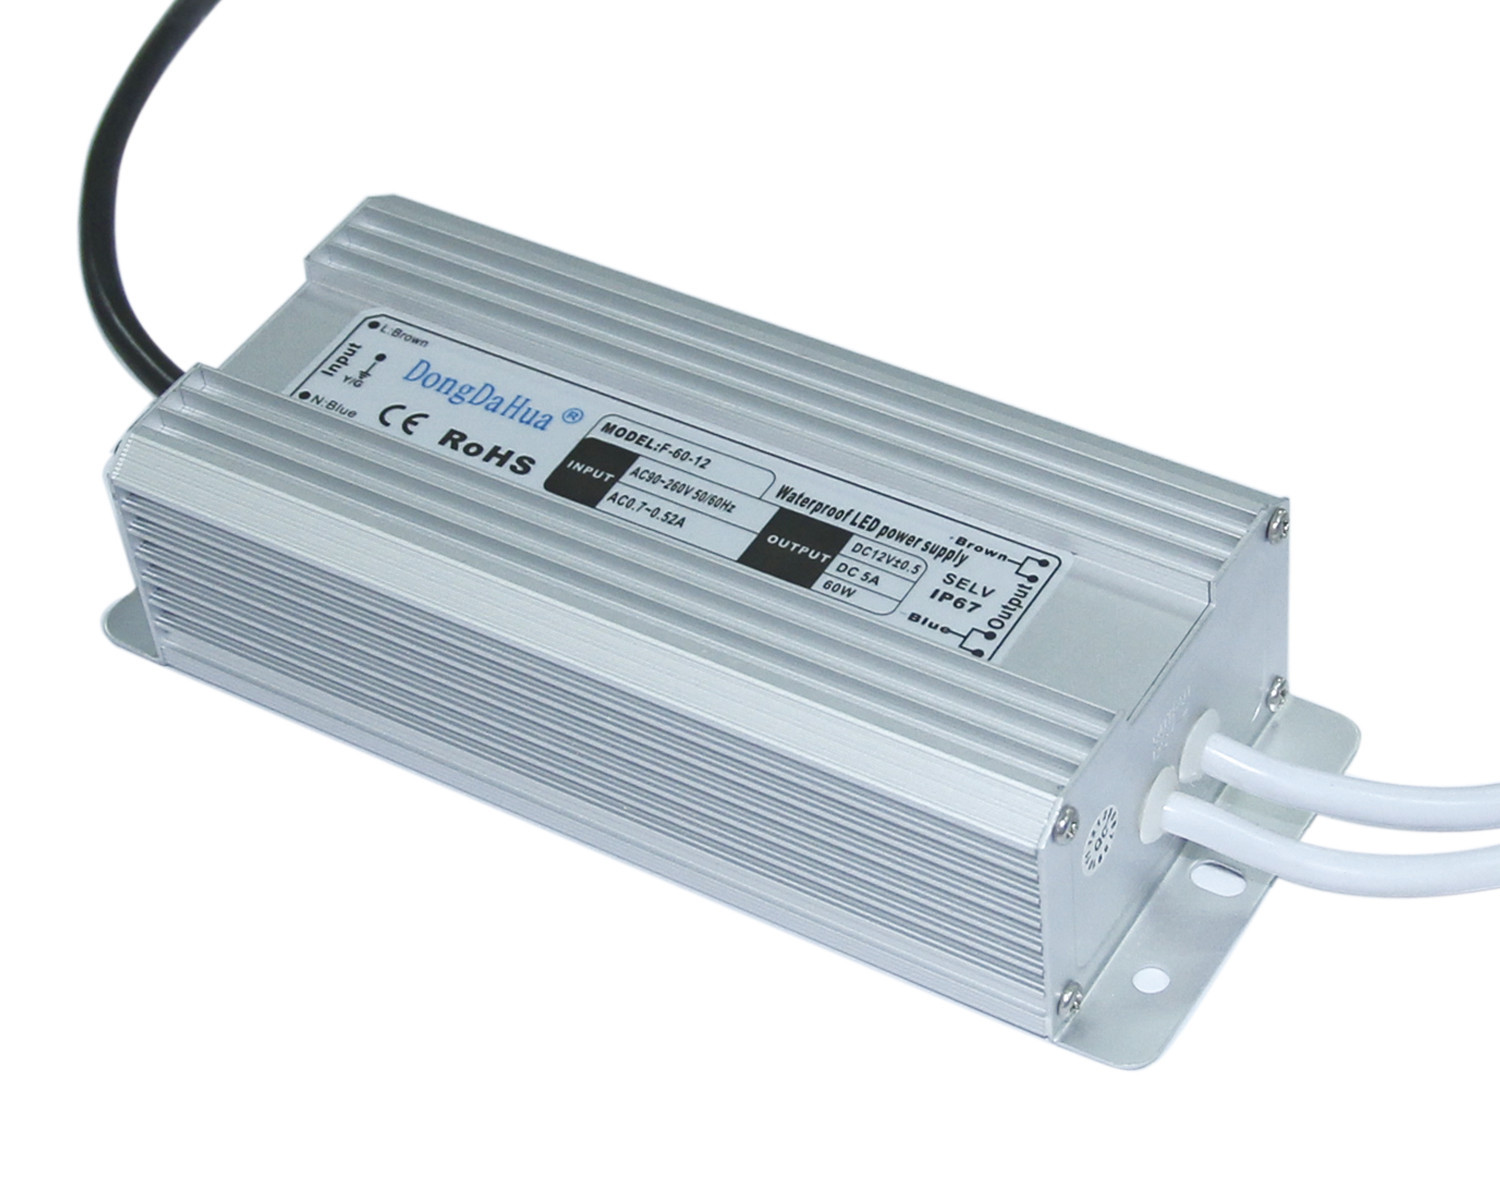 AC 220v AC Su Geçirmez AC, DC Güç Kaynağı 60W, 24V DC LED Driver için